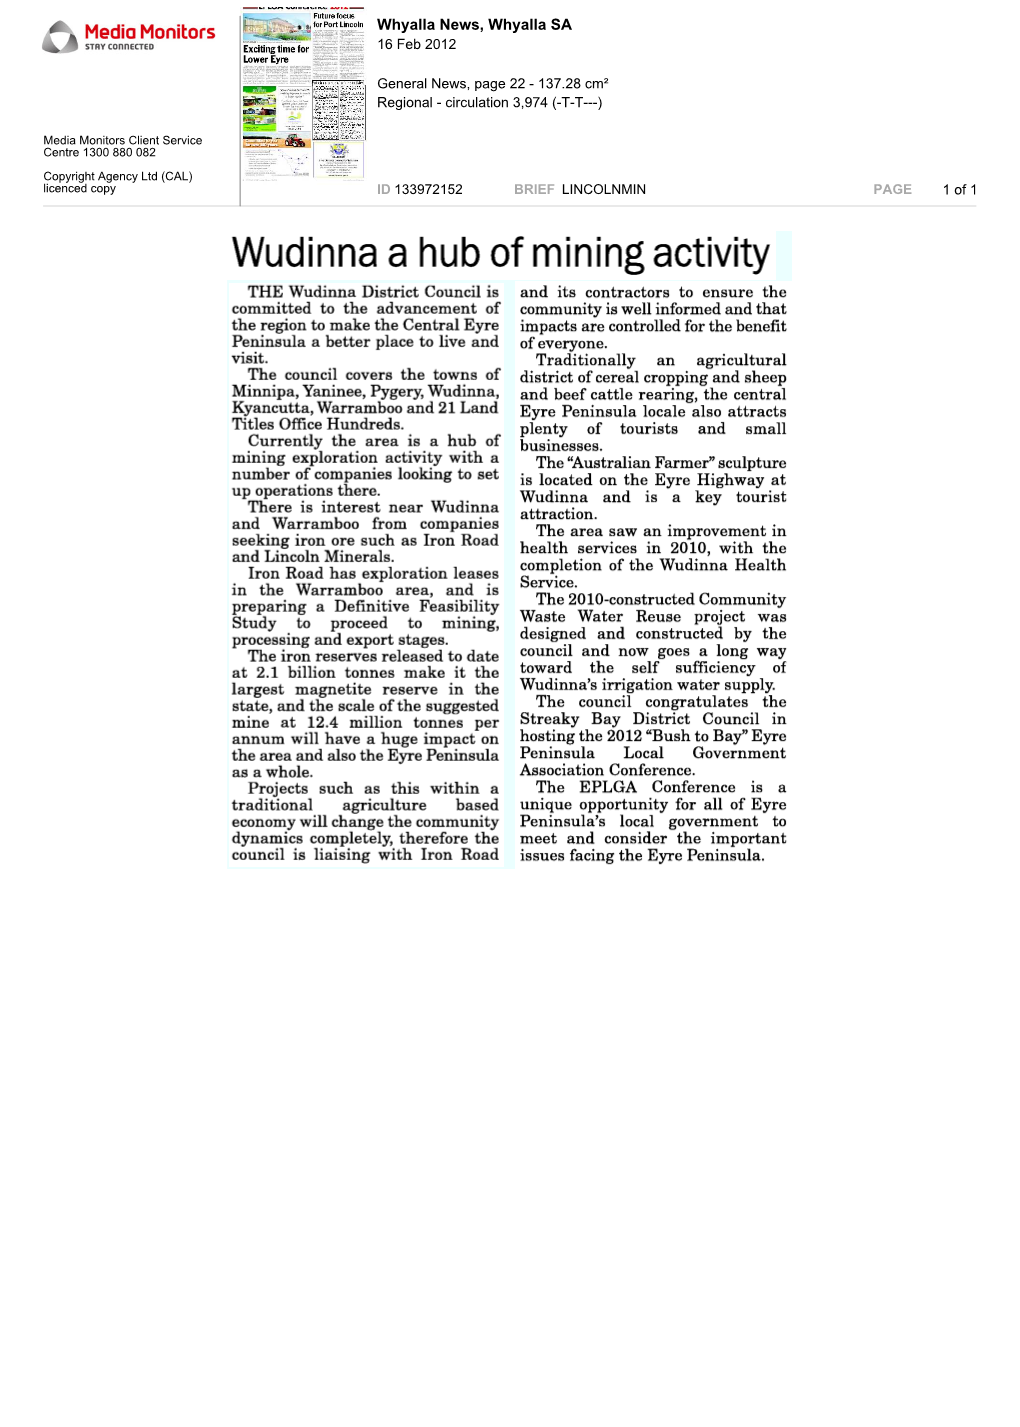 Wudinna a Hub of Mining Activity